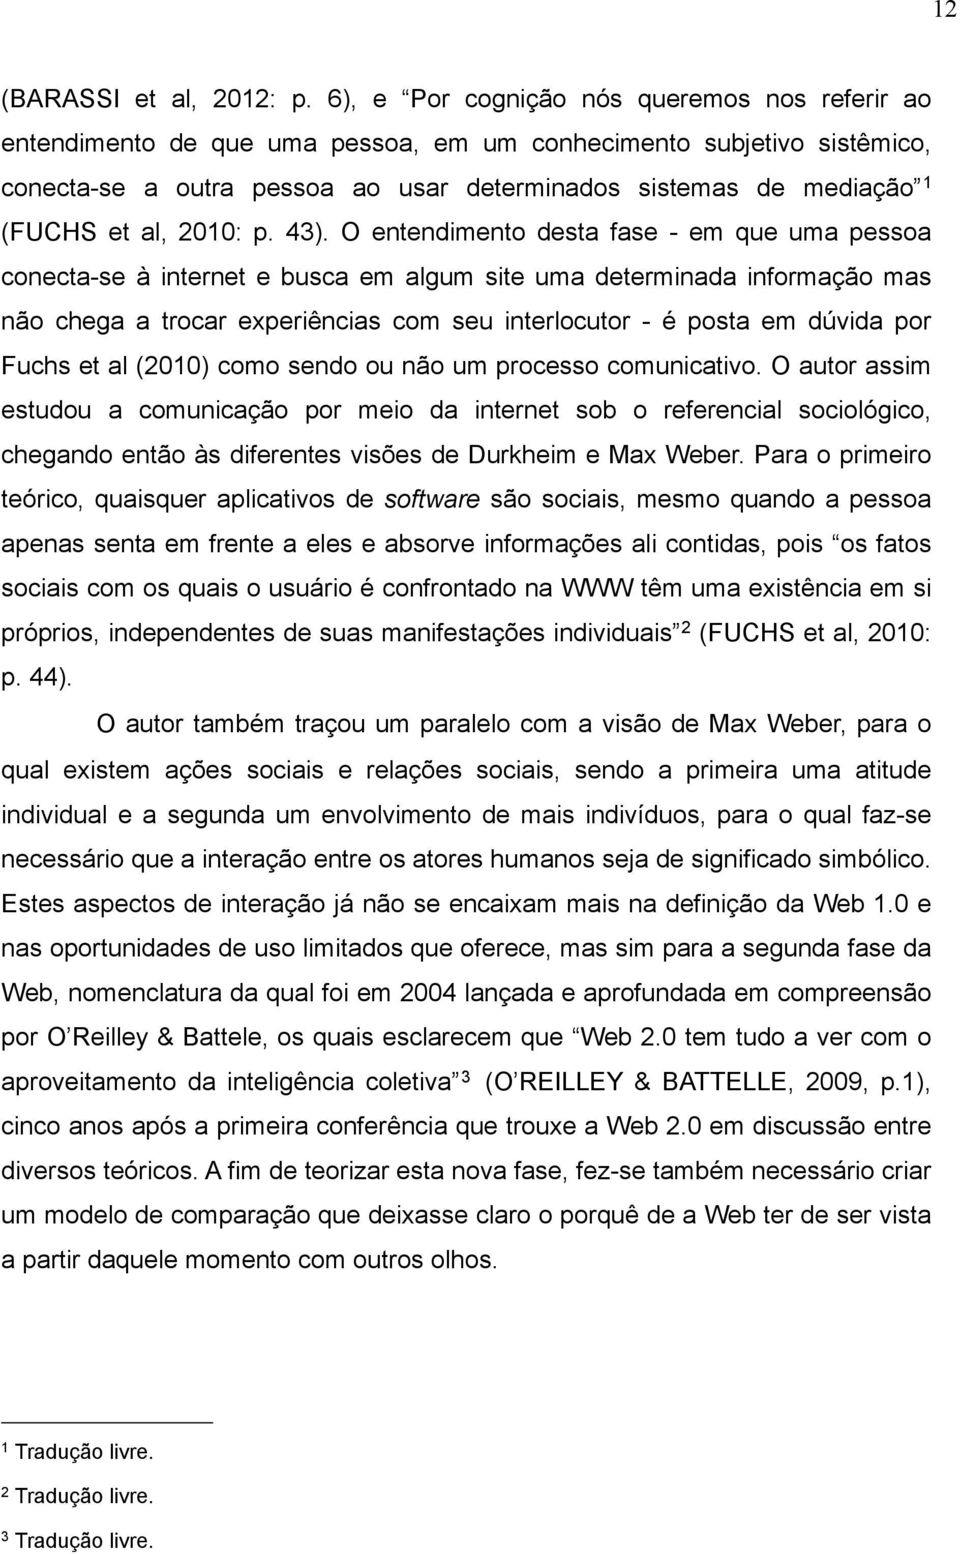 al, 2010: p. 43).